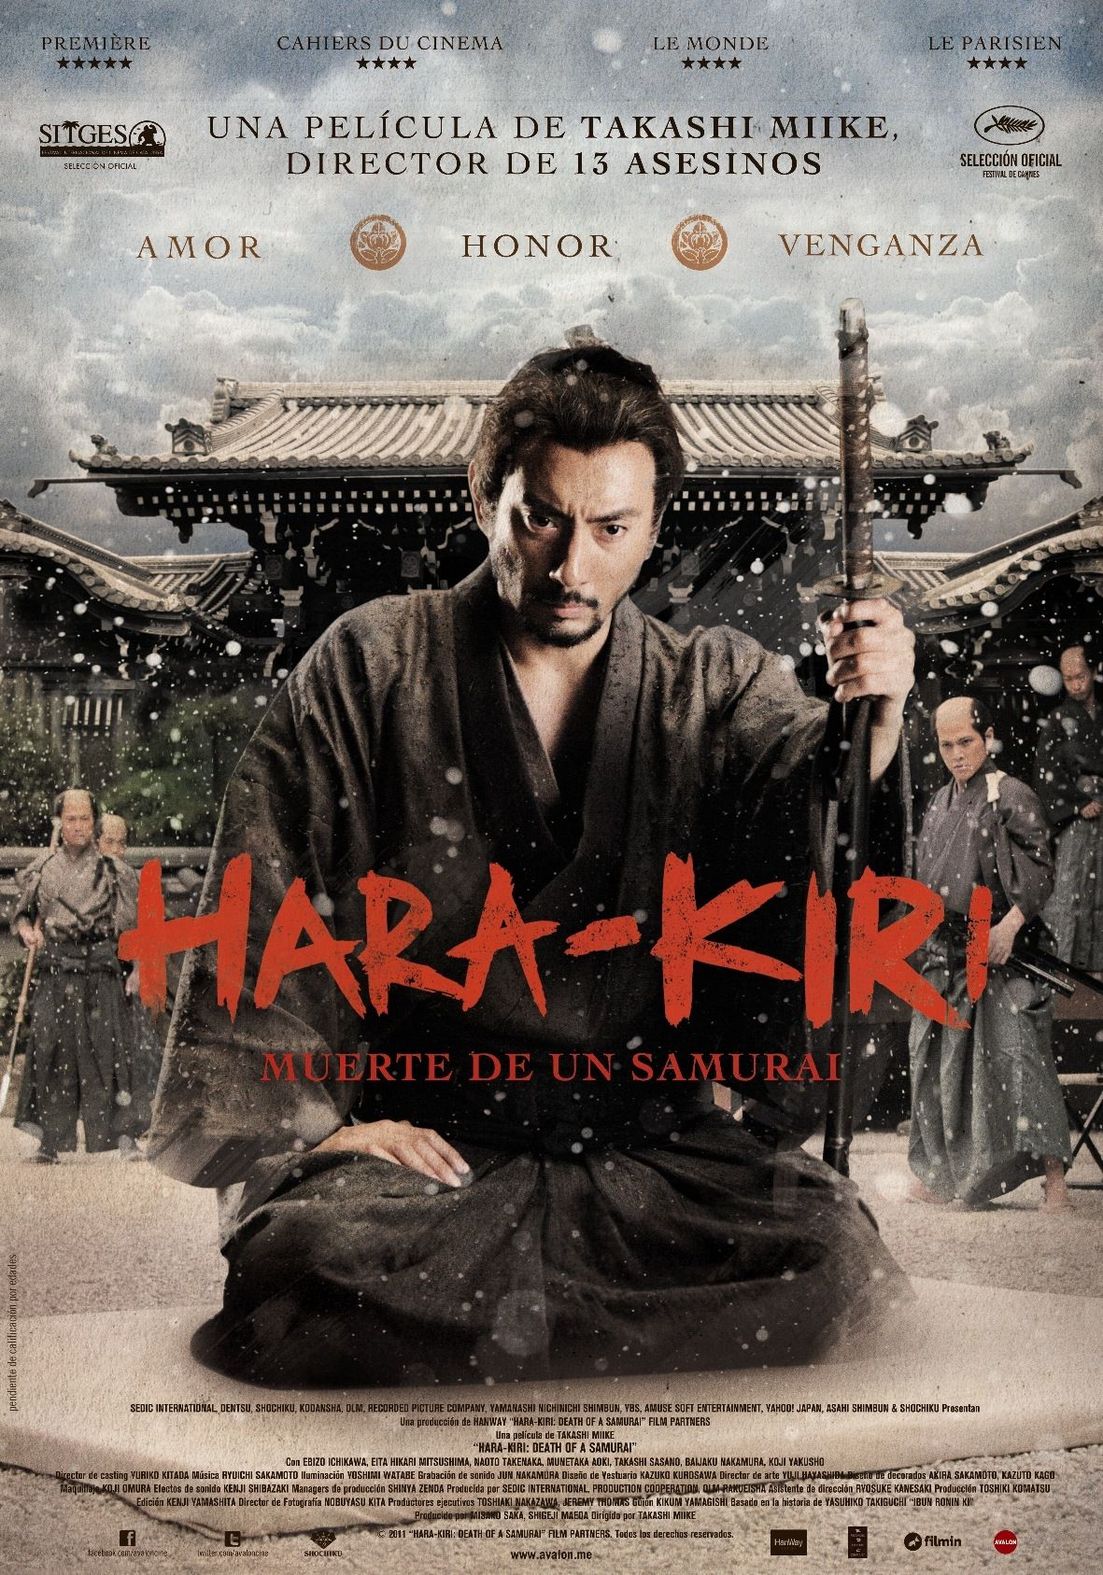 ดูหนังออนไลน์ฟรี Hara Kiri Death of a Samurai (2011) หนังเต็มเรื่อง หนังมาสเตอร์ ดูหนังHD ดูหนังออนไลน์ ดูหนังใหม่